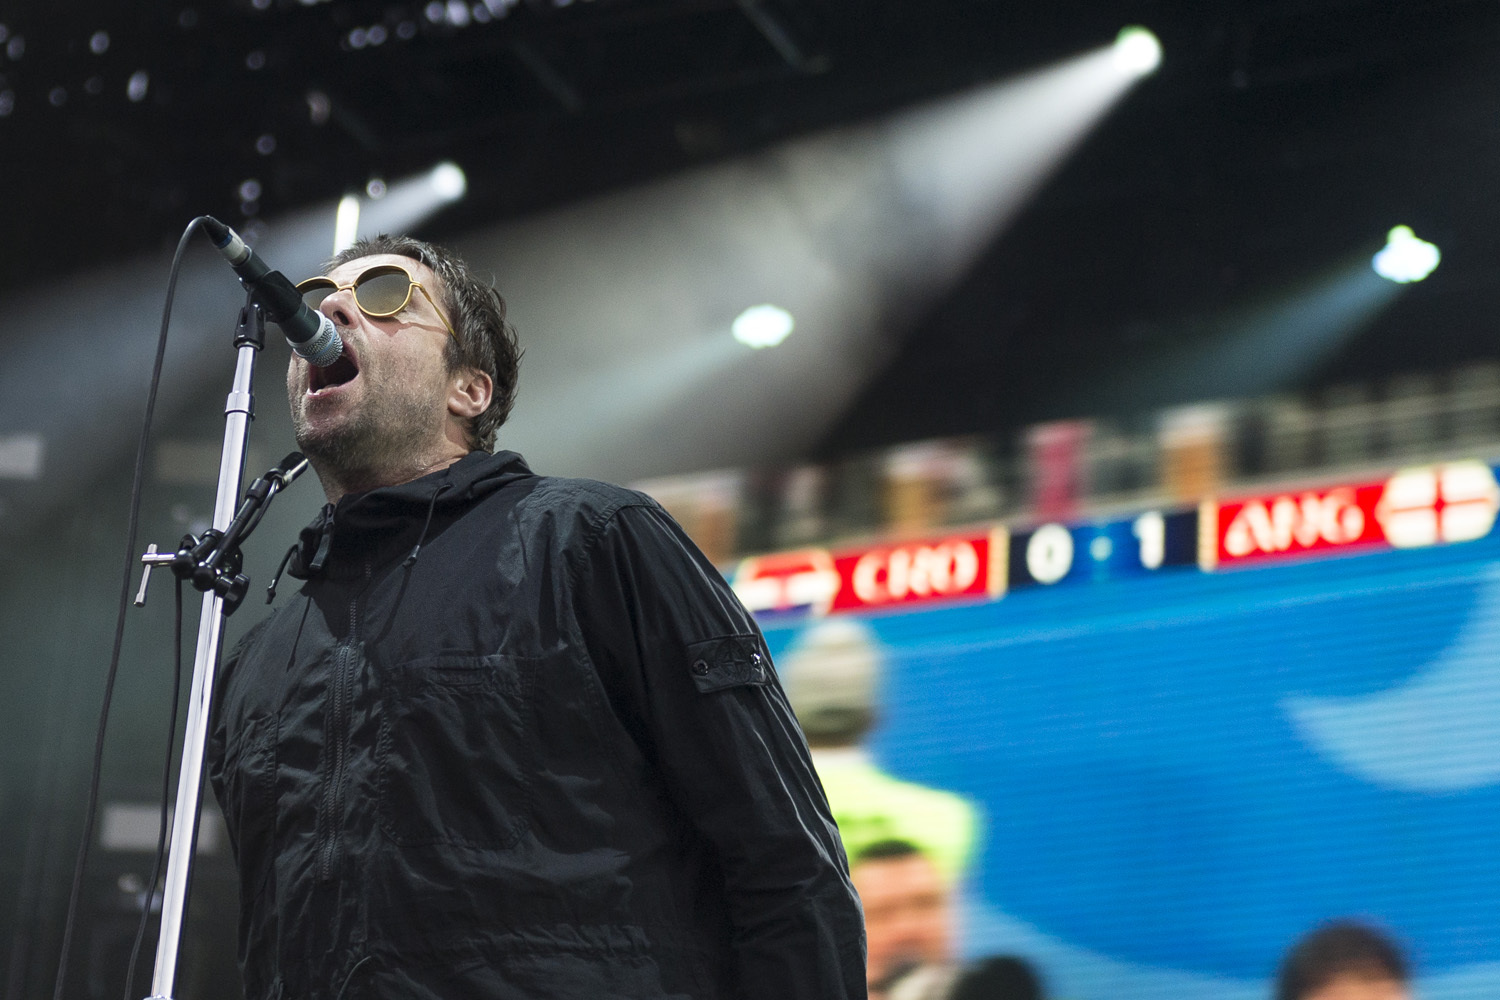 L'ex-chanteur d'Oasis a diffusé, durant son concert, la demi-finale de la coupe du monde.